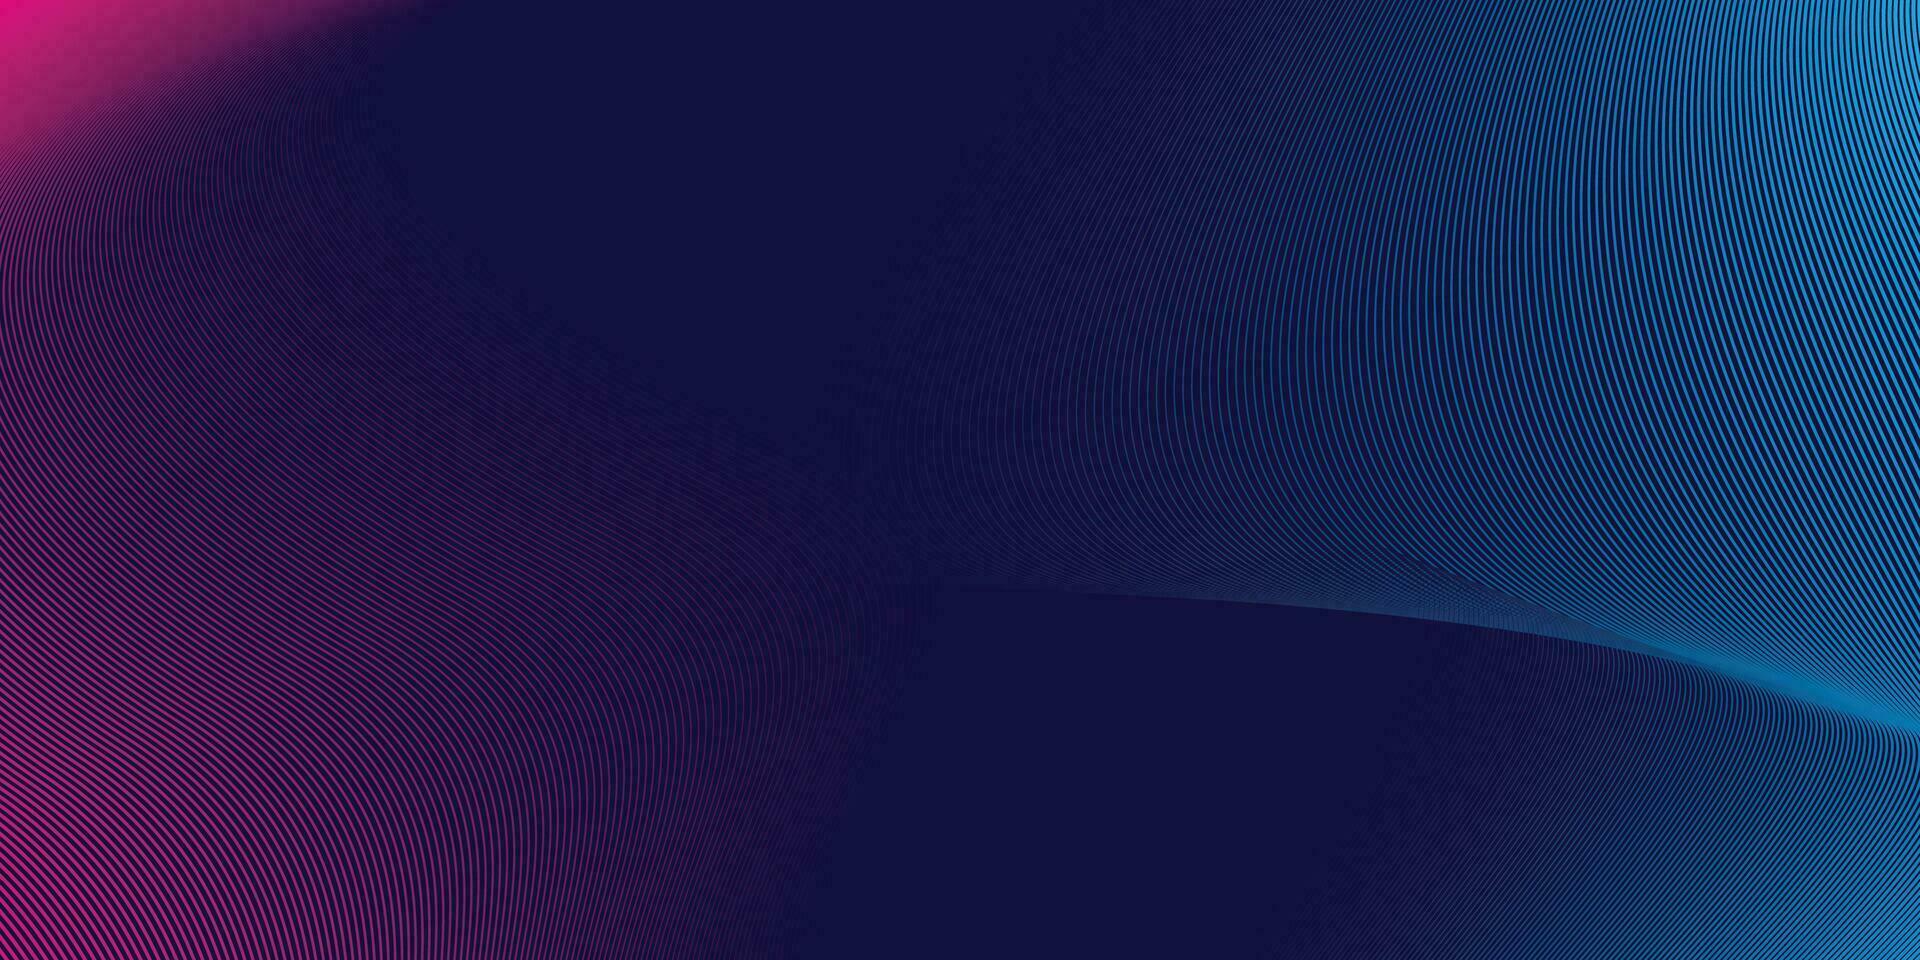 abstrakt bunt Technologie Linie Welle Hintergrund, modern lila Blau Gradient fließend Welle Linien. futuristisch Technologie Konzept. Vektor Illustration Profi Vektor